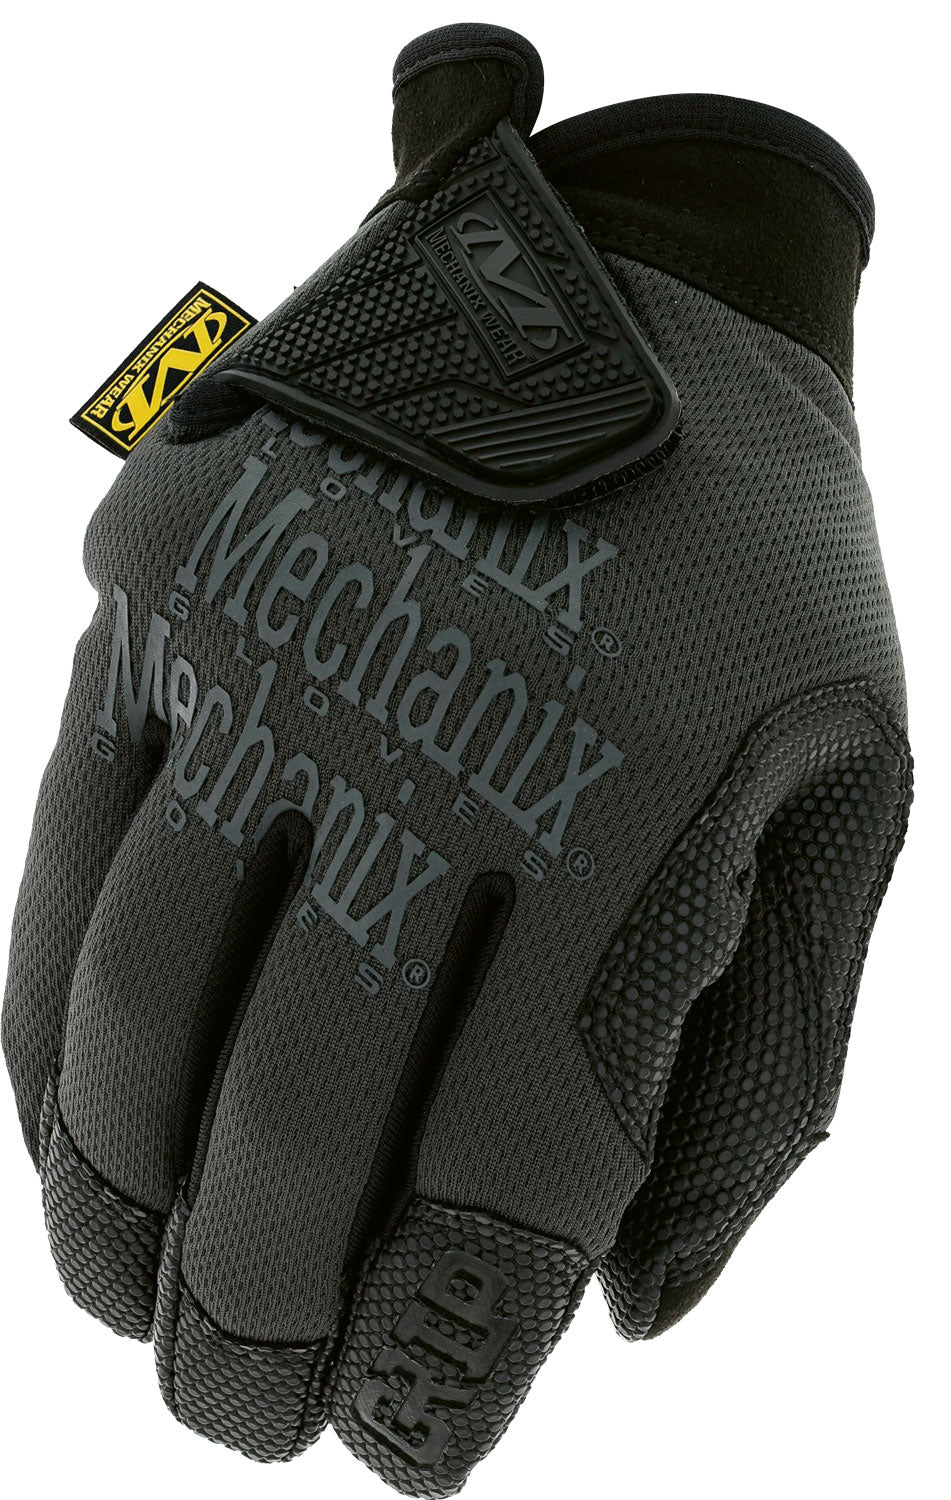 Mechanix Wear Glove Specialty Grip